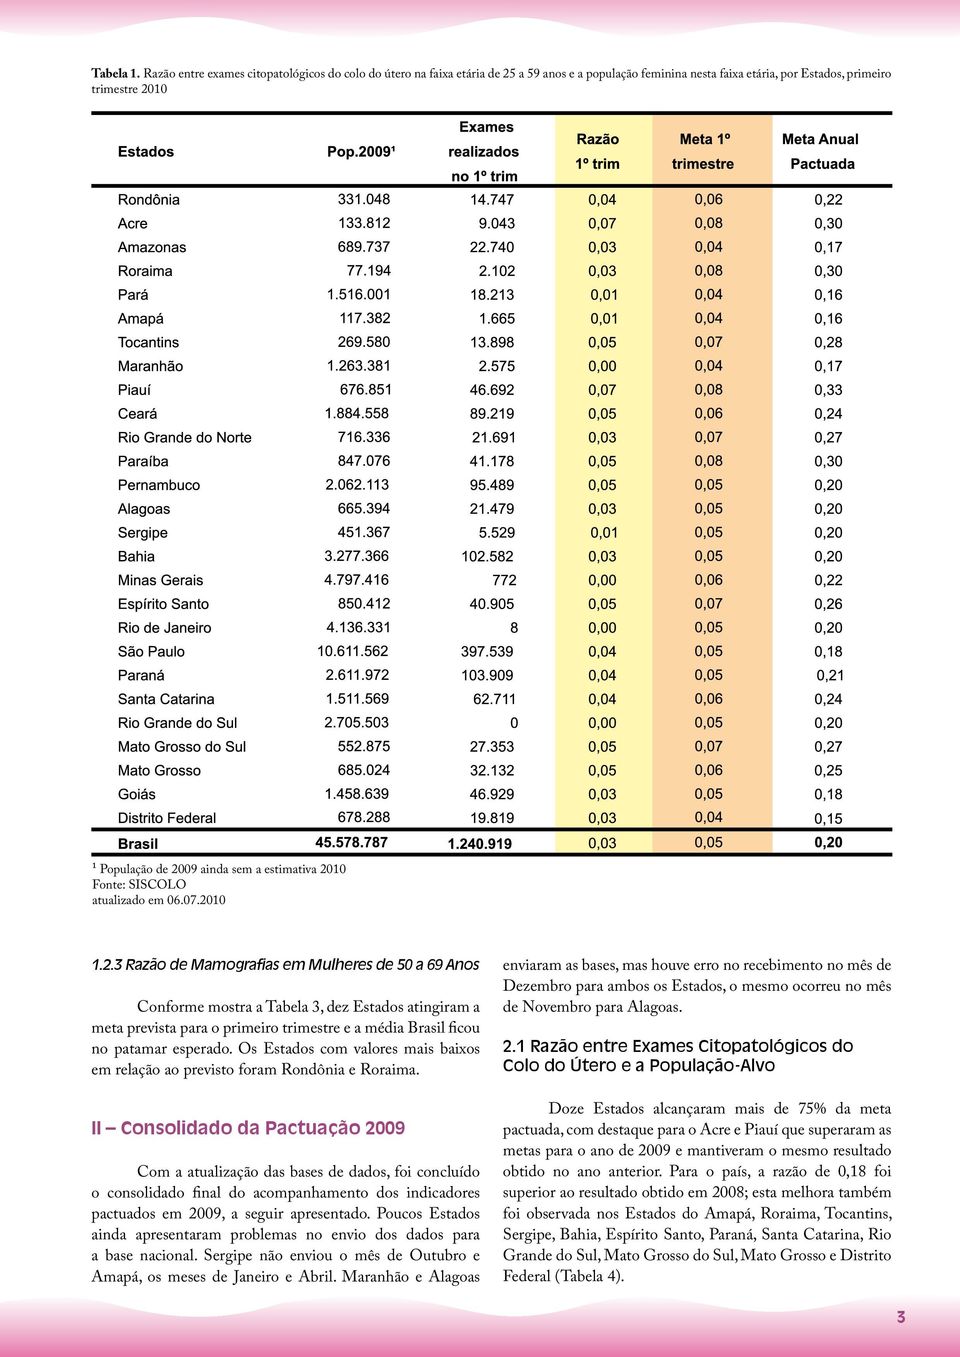 estimativa 2010 Fonte: SISCOLO atualizado em 06.07.2010 1.2.3 Razão de Mamografias em Mulheres de 50 a 69 Anos Conforme mostra a Tabela 3, dez Estados atingiram a meta prevista para o primeiro trimestre e a média Brasil ficou no patamar esperado.